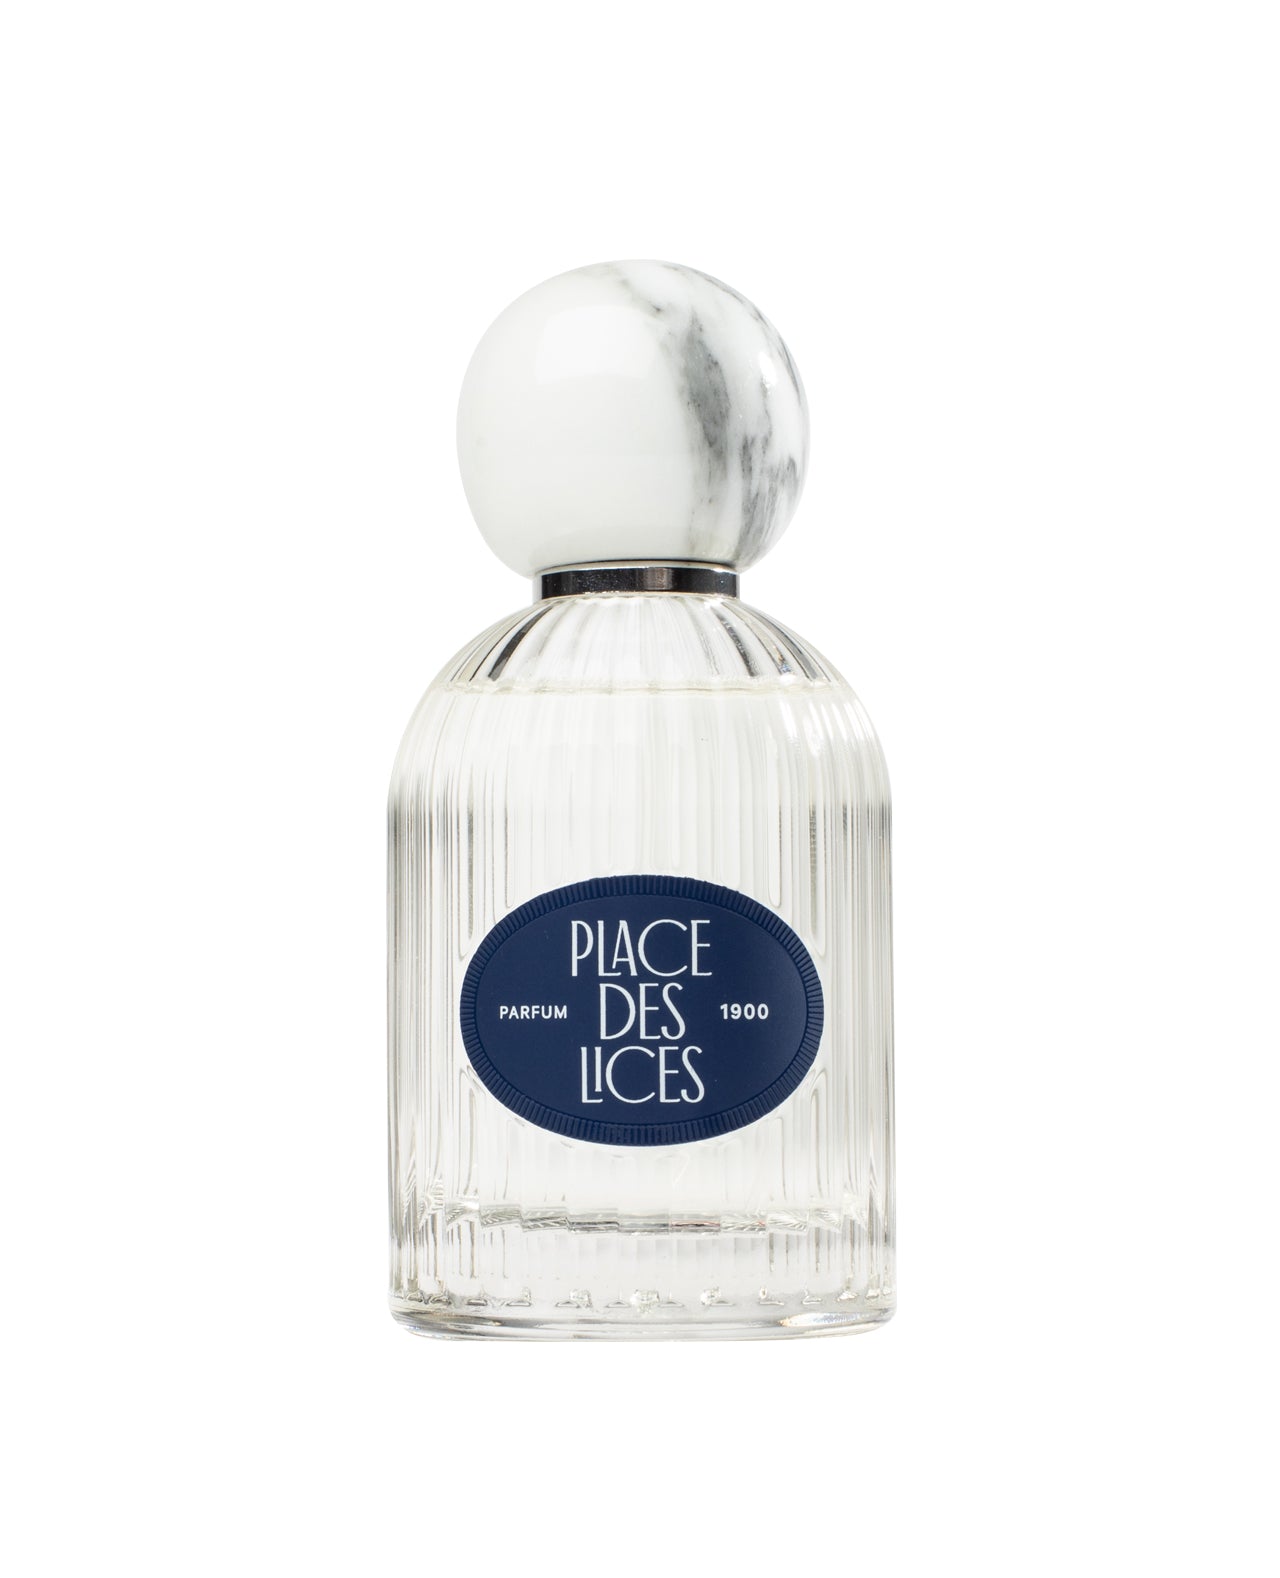 1900 100ml Eau de Parfum Bottle by Place des Lices